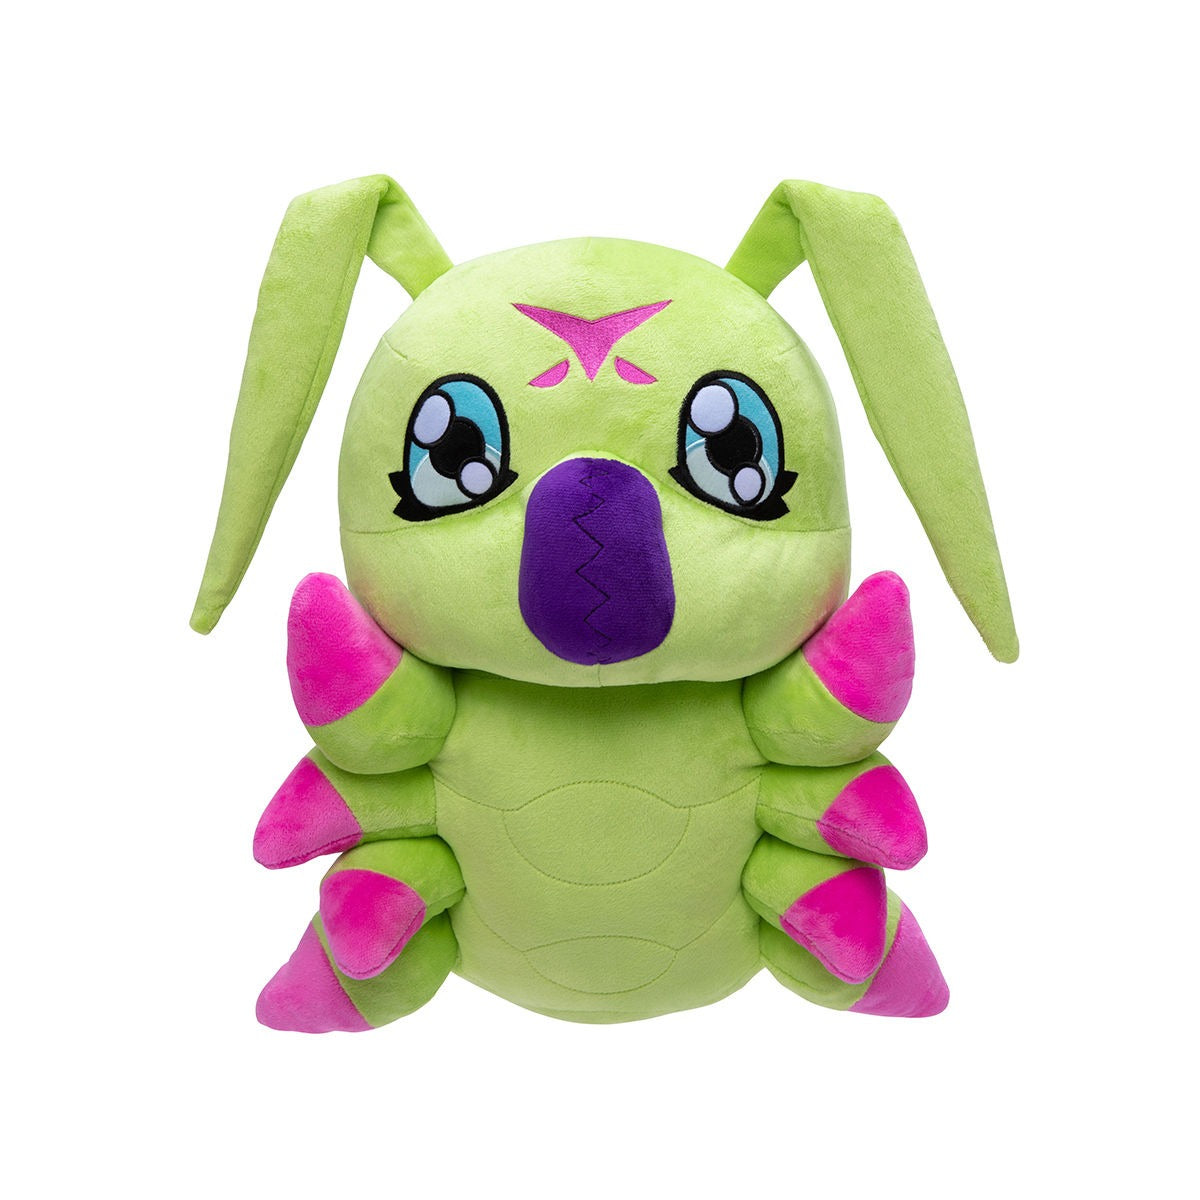 Wormmon Digimon Plush Toy